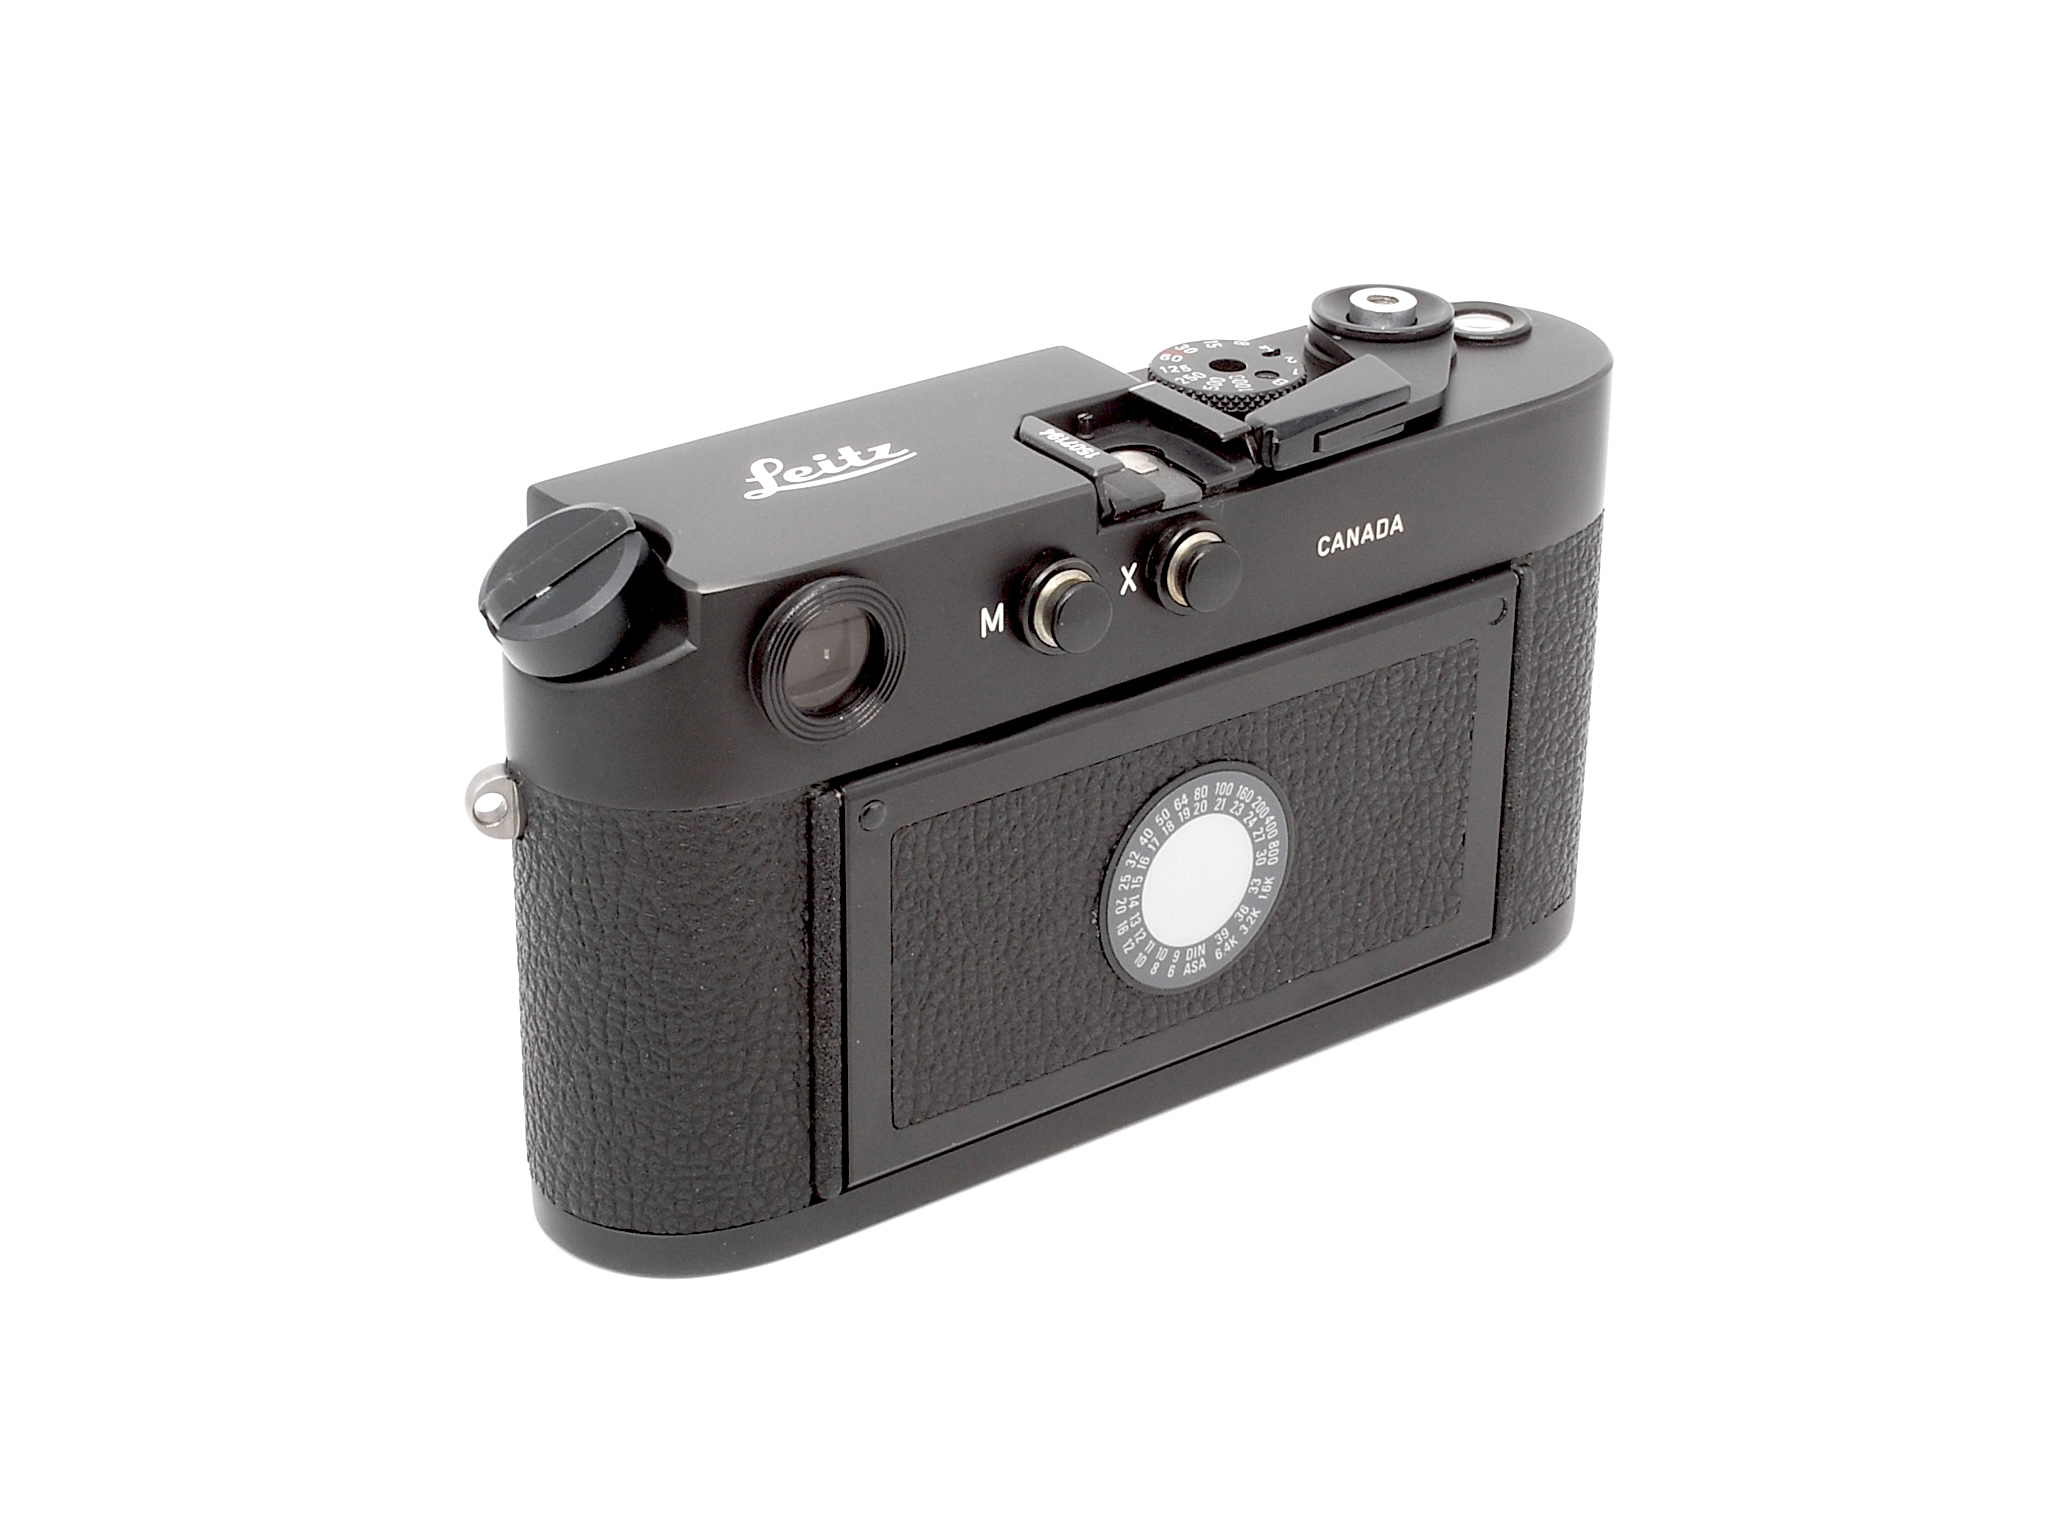 Leica M4-2 schwarz verchromt